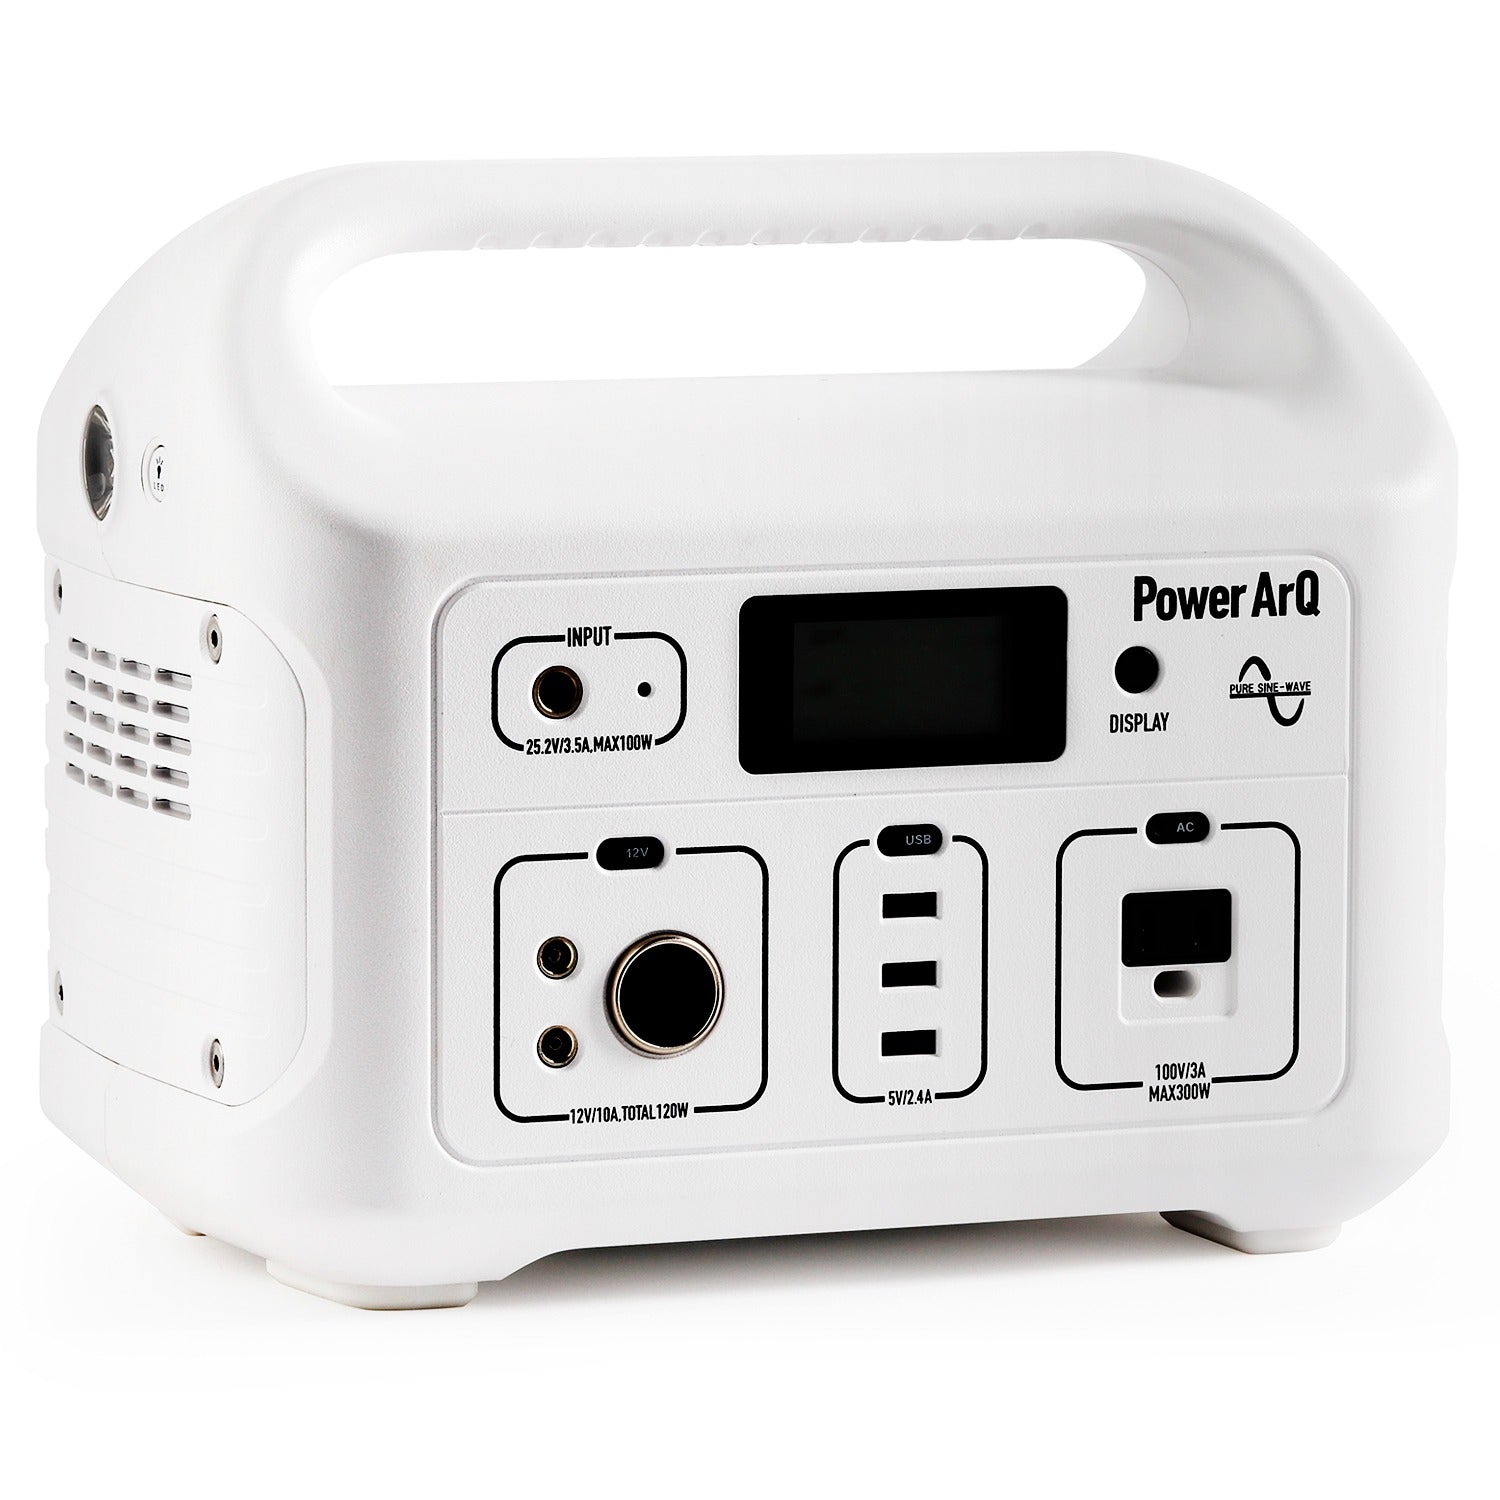 【整備済み】PowerArQ ポータブル電源 ホワイト 626Wh Smart Tap